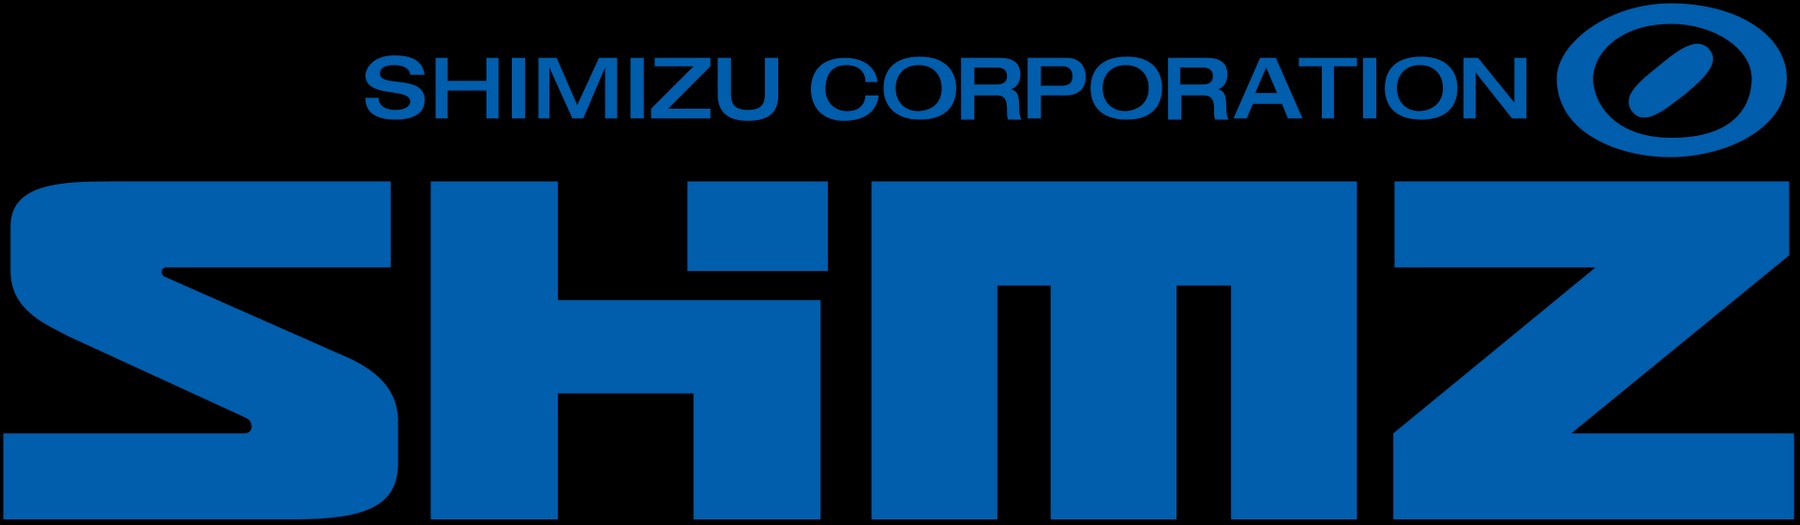 1920px-shimizu_company_logo.svg.png